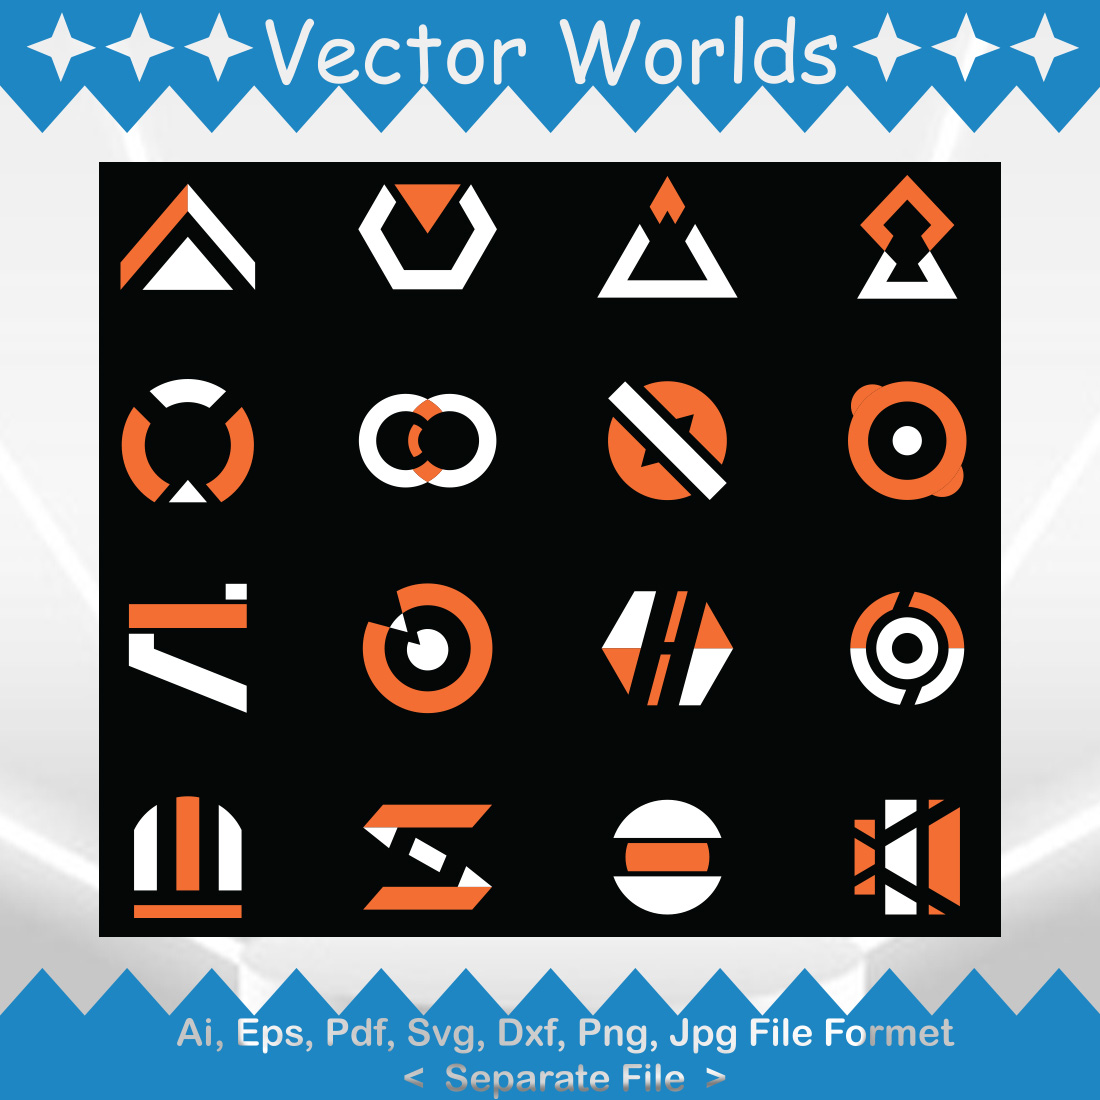 Letter Logo SVG Vector Design cover image.